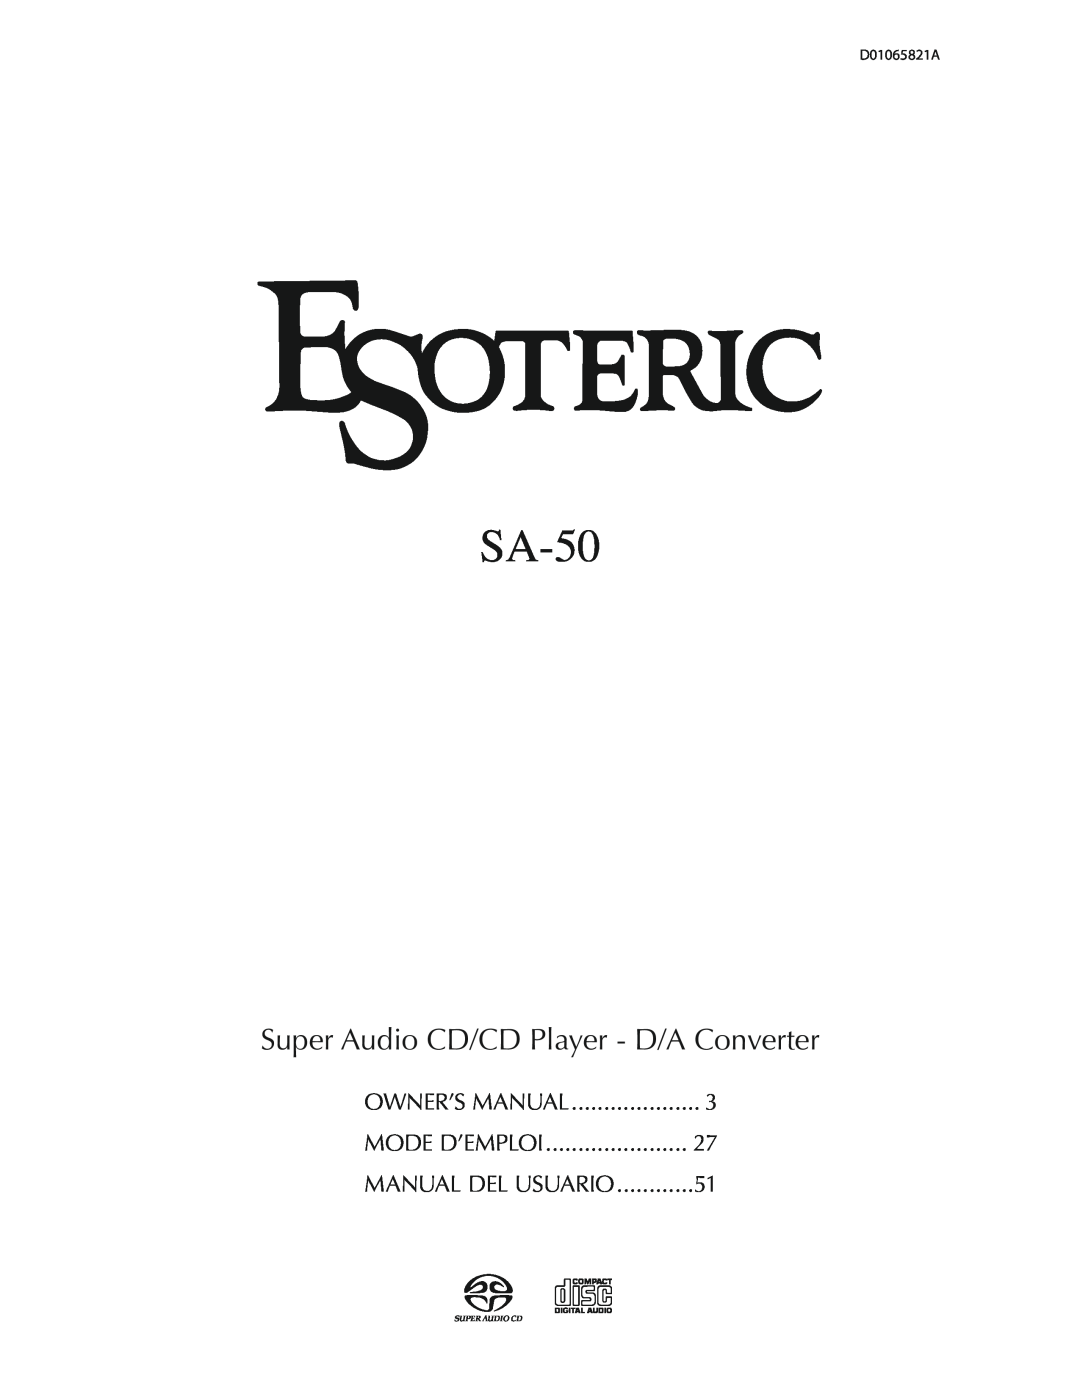 Esoteric SA-50 owner manual Super Audio CD/CD Player - D/A Converter, Mode D’Emploi, Manual Del Usuario 